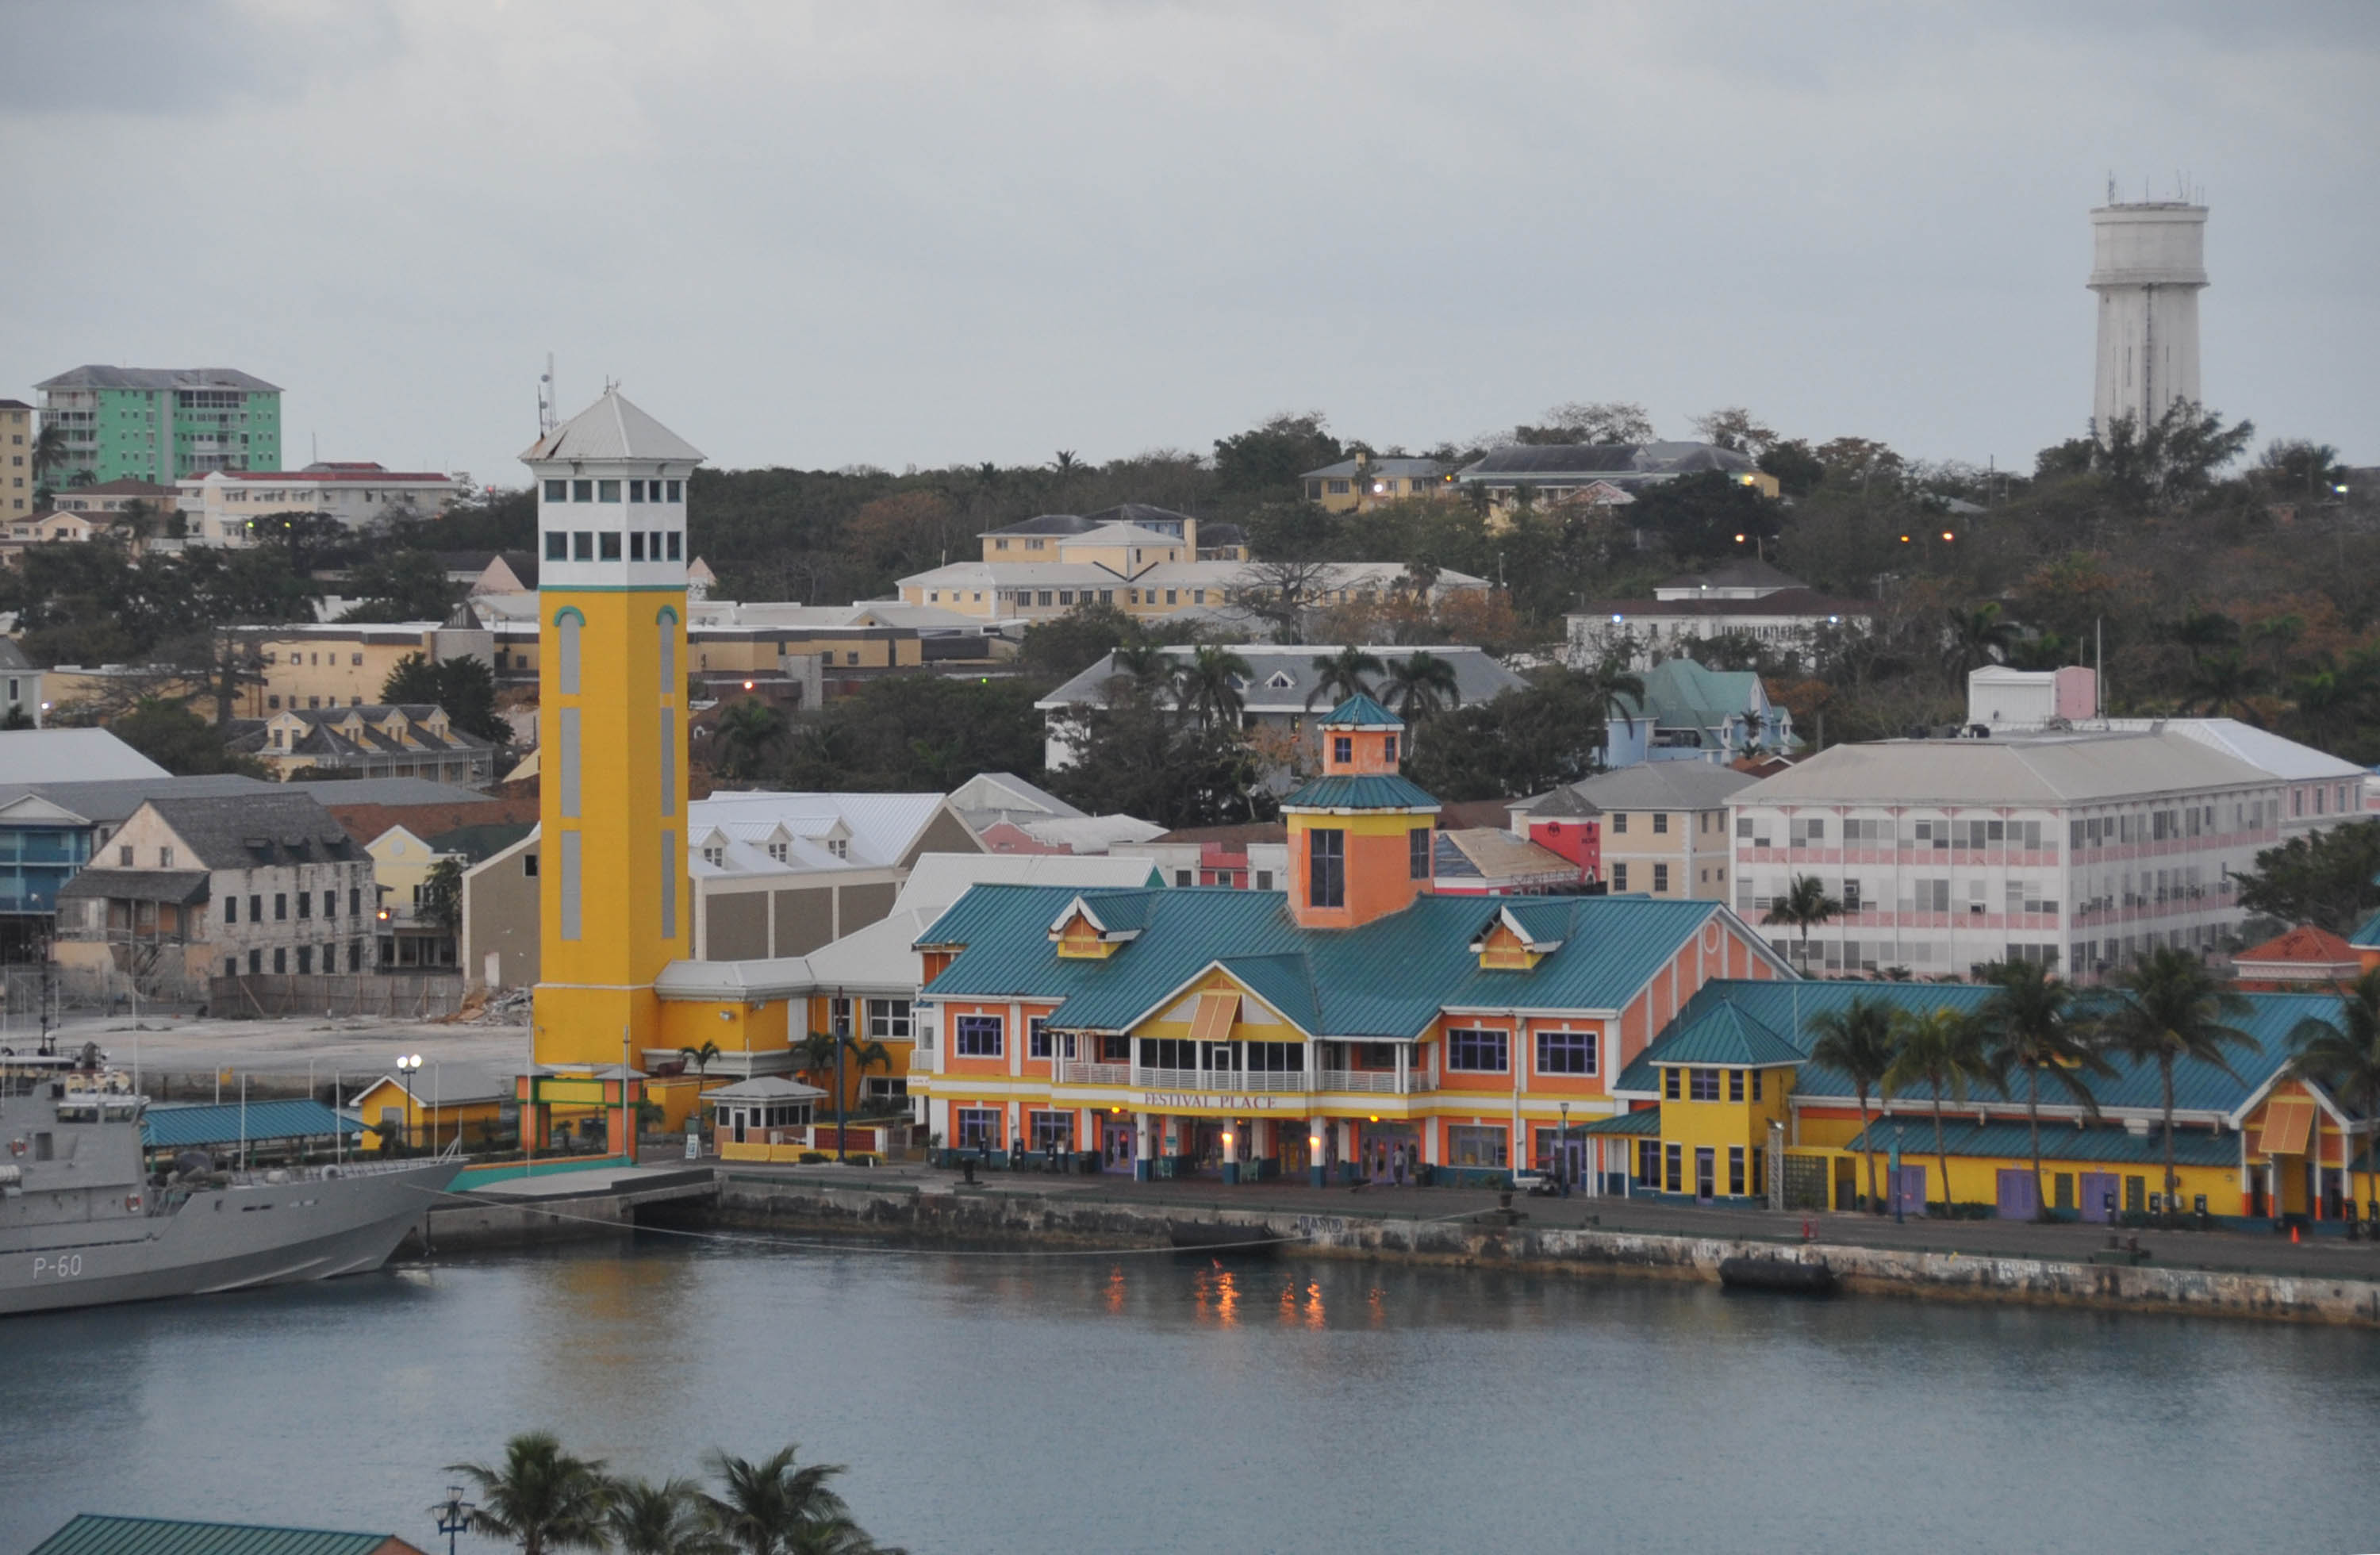 nassau bahamas cruise terminal photos